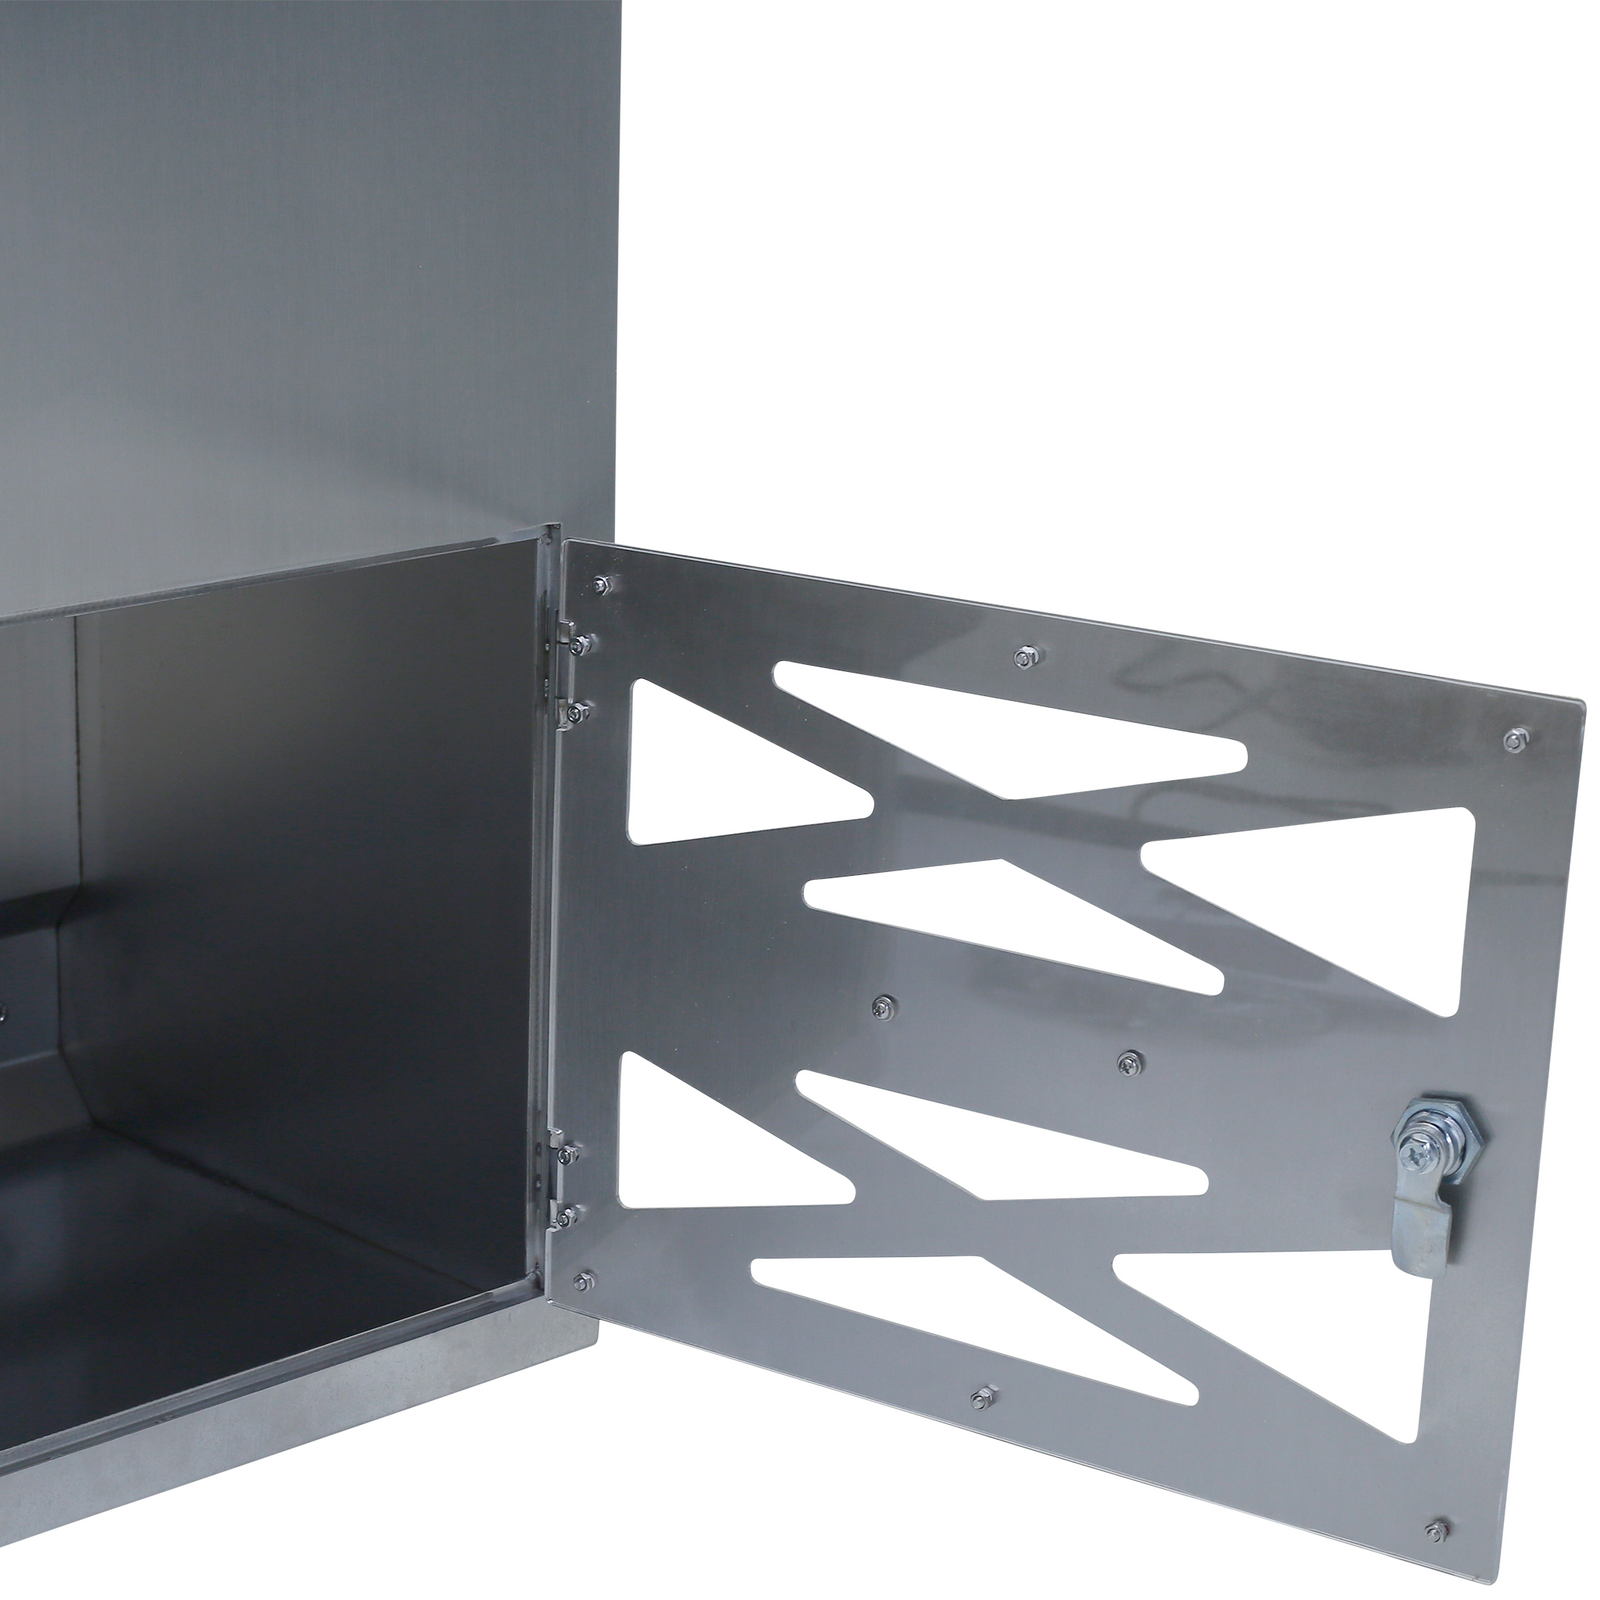 exit door of steel metal detector with white conveyor